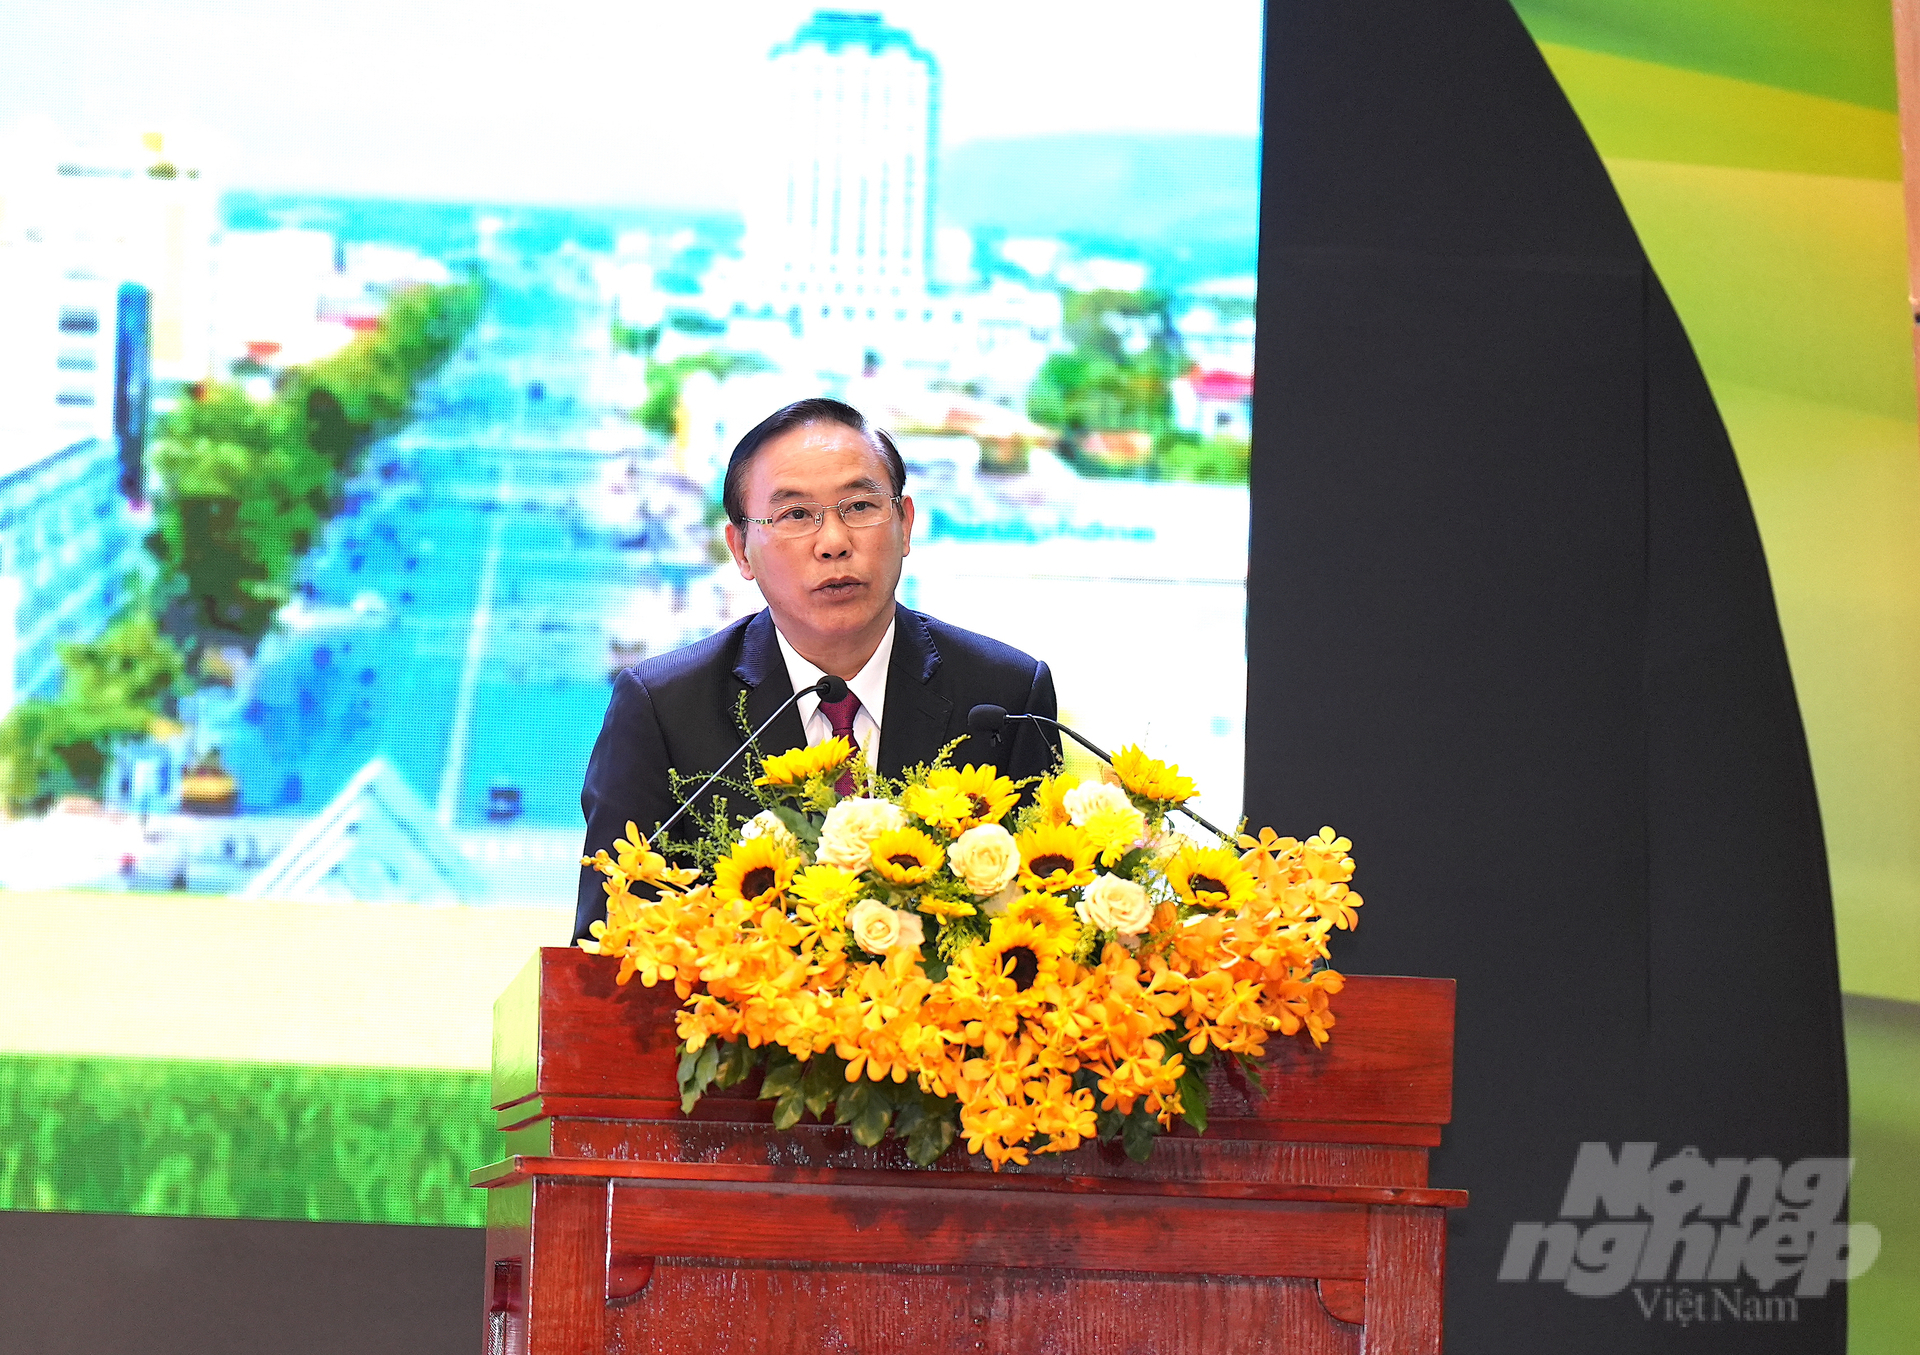 Thứ trưởng Phùng Đức Tiến: 'Trong thời gian tới, Tây Ninh cần sự quyết tâm cao của cả hệ thống chính trị, khai thác và sử dụng có hiệu quả các nguồn lực sẵn có, đồng thời thu hút nguồn lực từ khu vực kinh tế tư nhân và FDI'. Ảnh: Hồng Thuỷ.